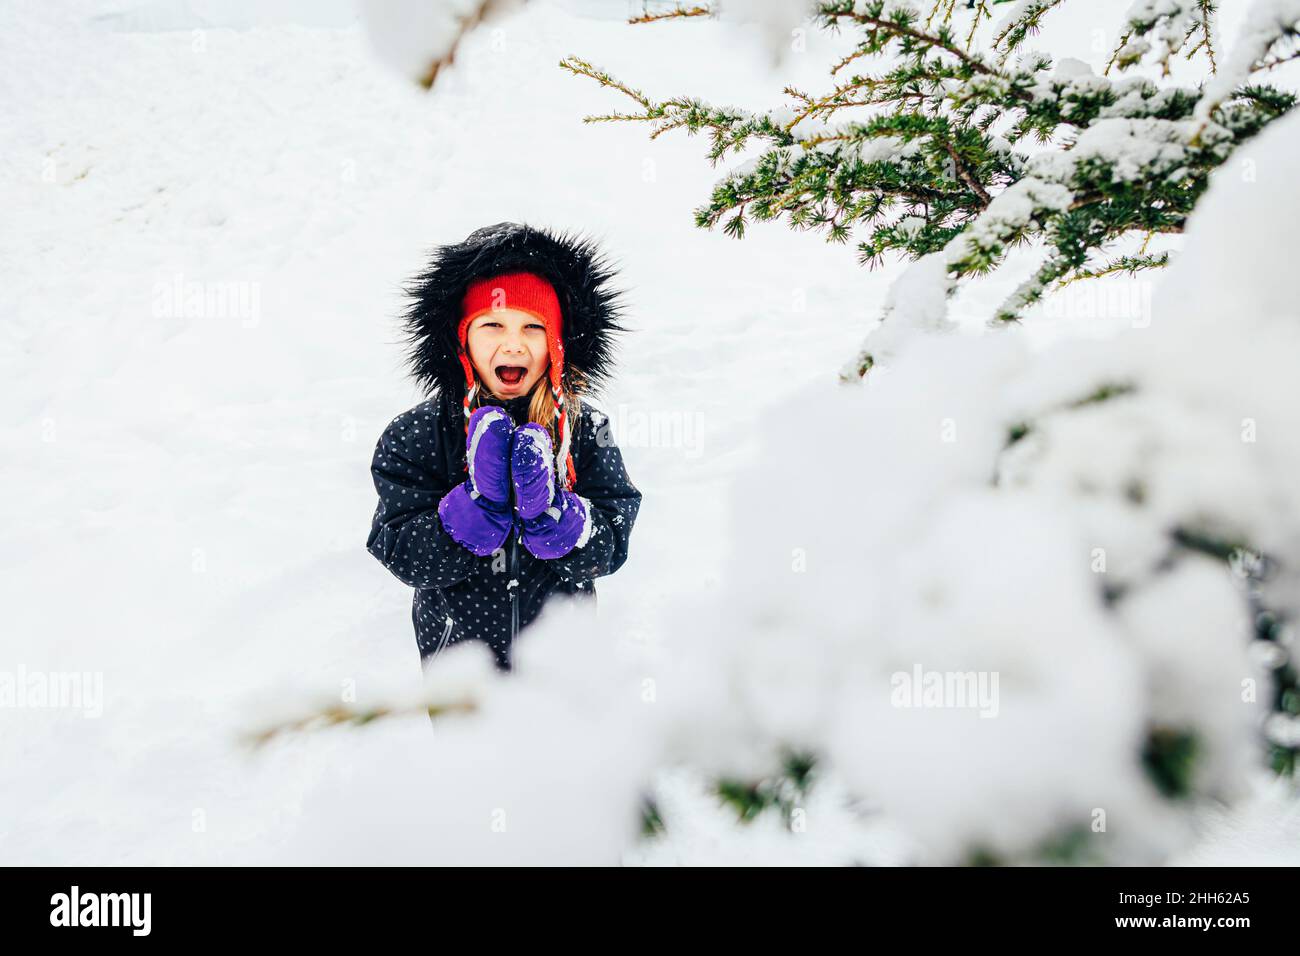 Una chica que llevaba anorak gritando en las vacaciones de invierno Foto de stock